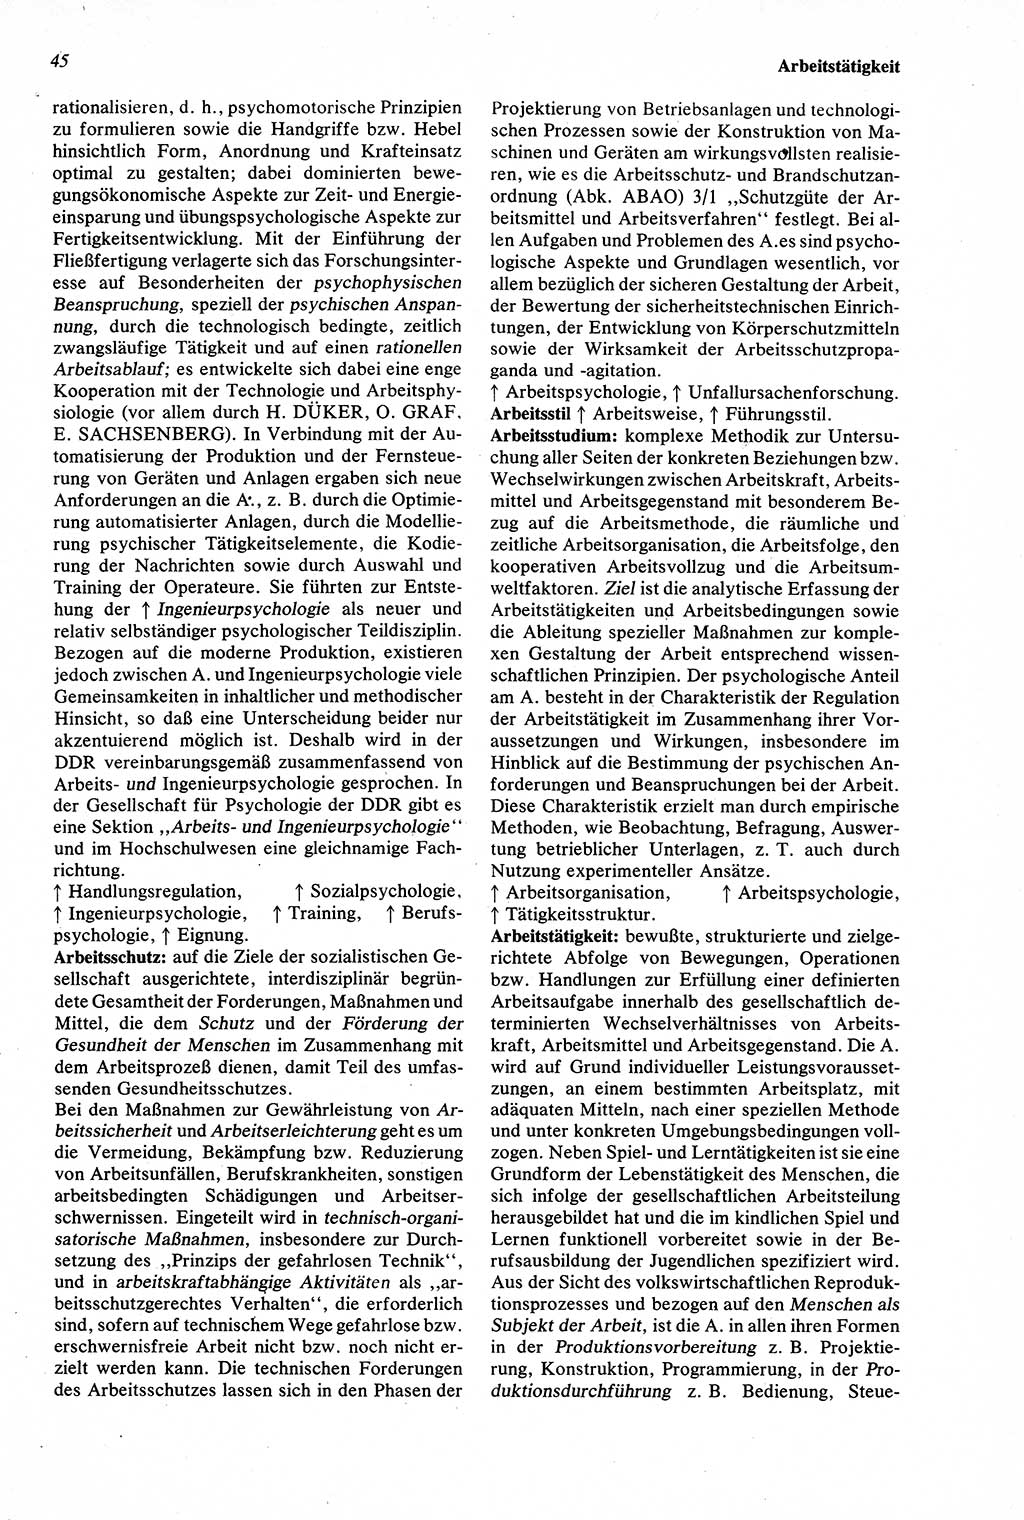 Wörterbuch der Psychologie [Deutsche Demokratische Republik (DDR)] 1976, Seite 45 (Wb. Psych. DDR 1976, S. 45)